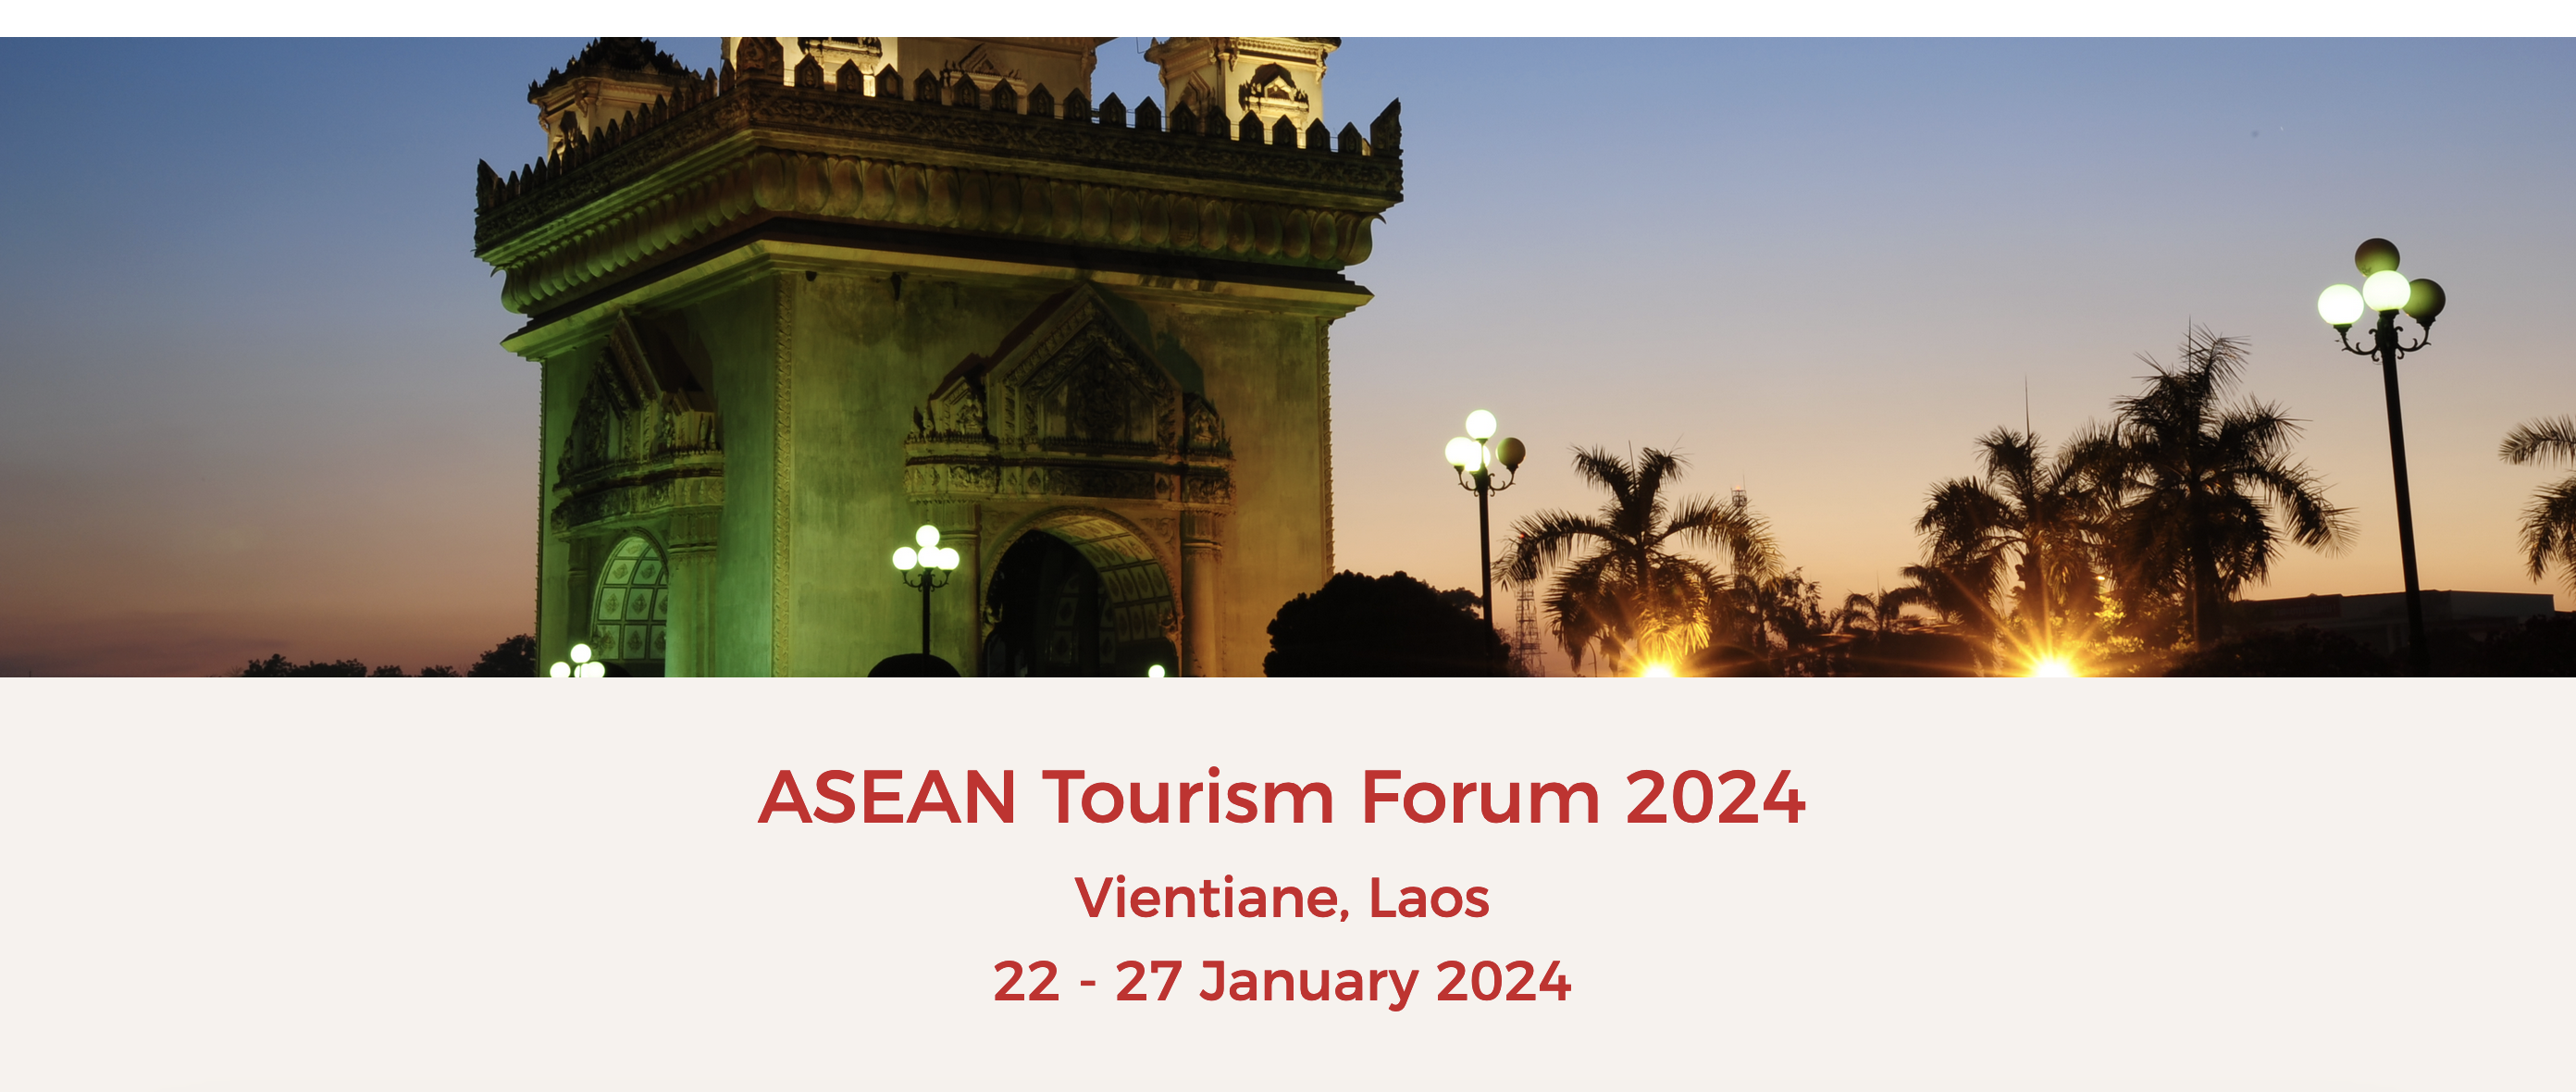 ASEAN Tourism Forum 2024, Vientiane, Laos, 22 - 27 January 2024 - Unravel Travel TV